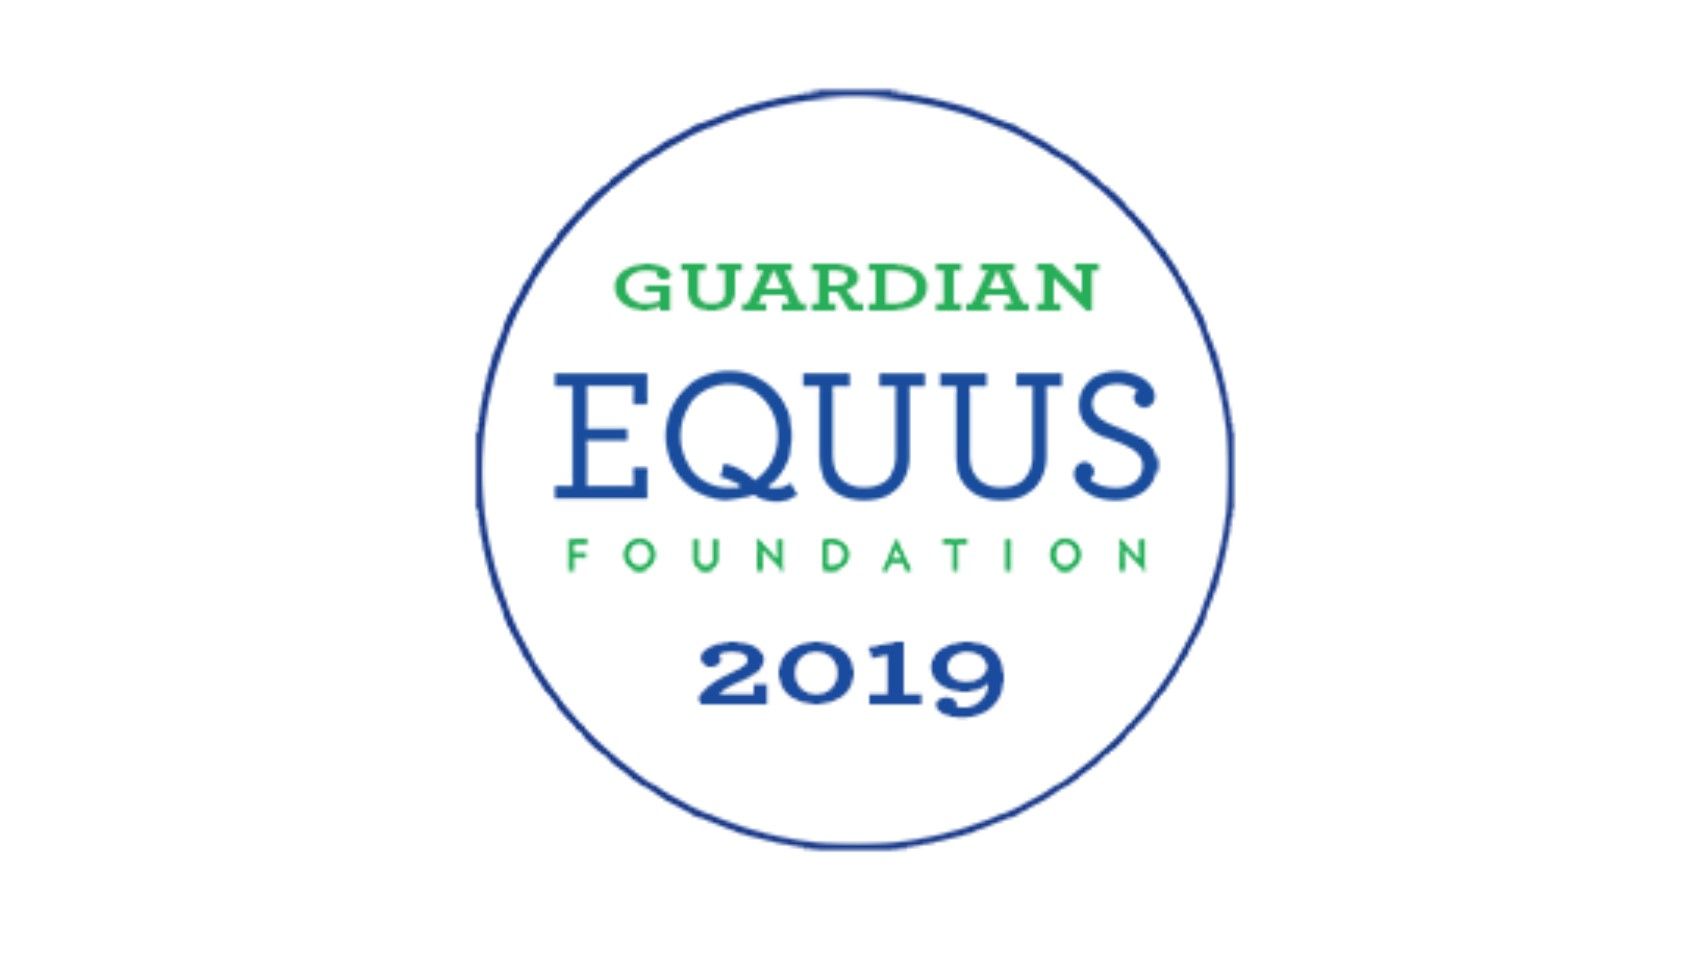 Equus Foundation